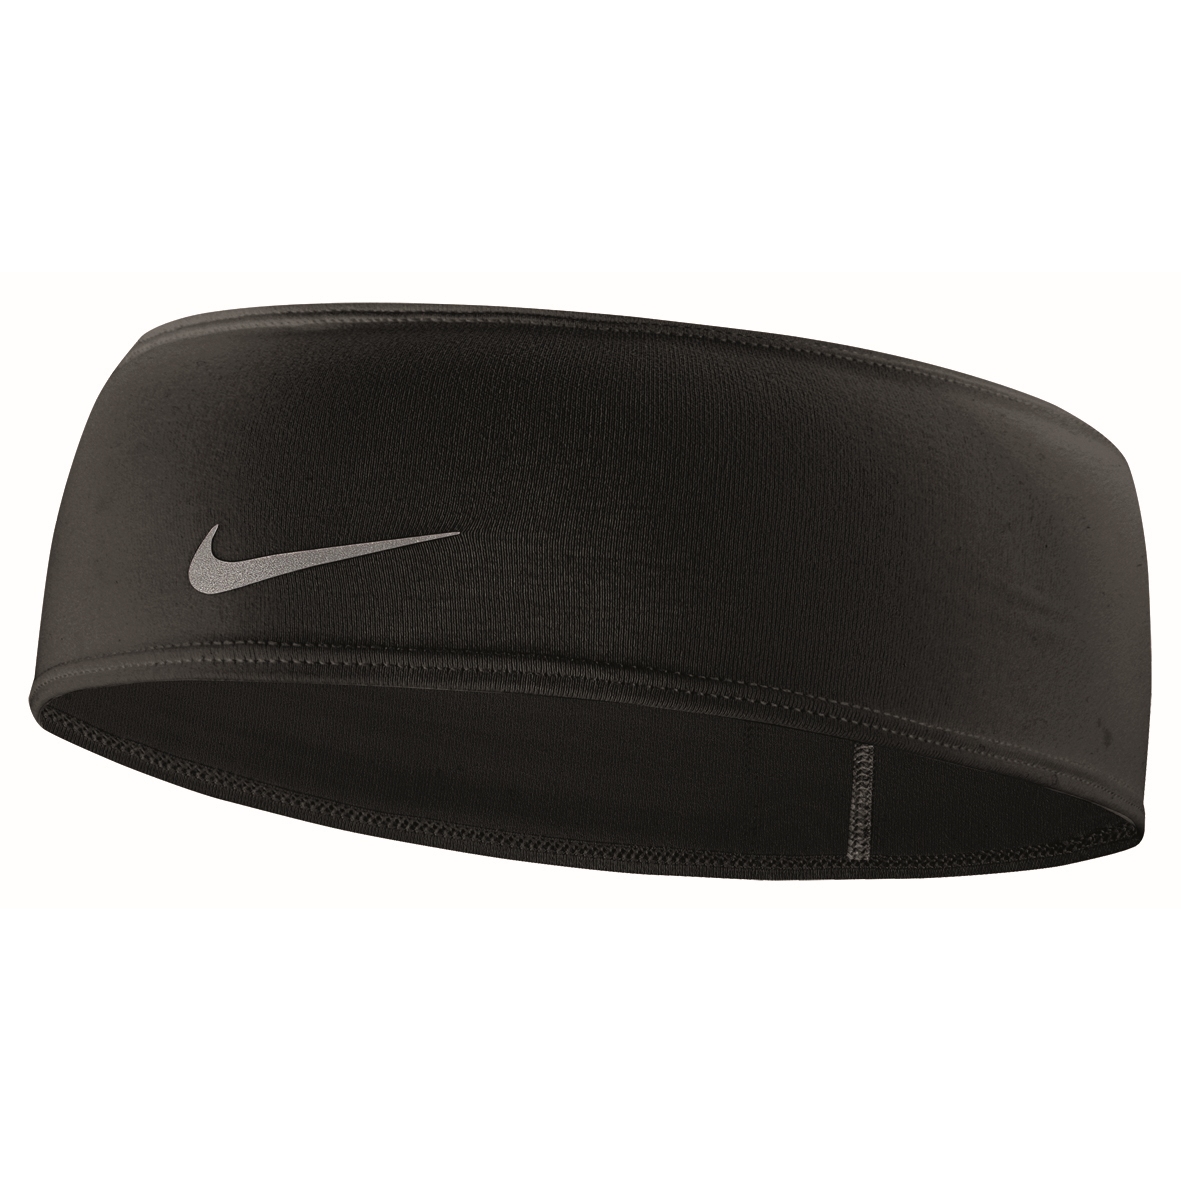 Productfoto van Nike Dri-Fit Swoosh - Hoofdband 2.0 - zwart/zilver 042